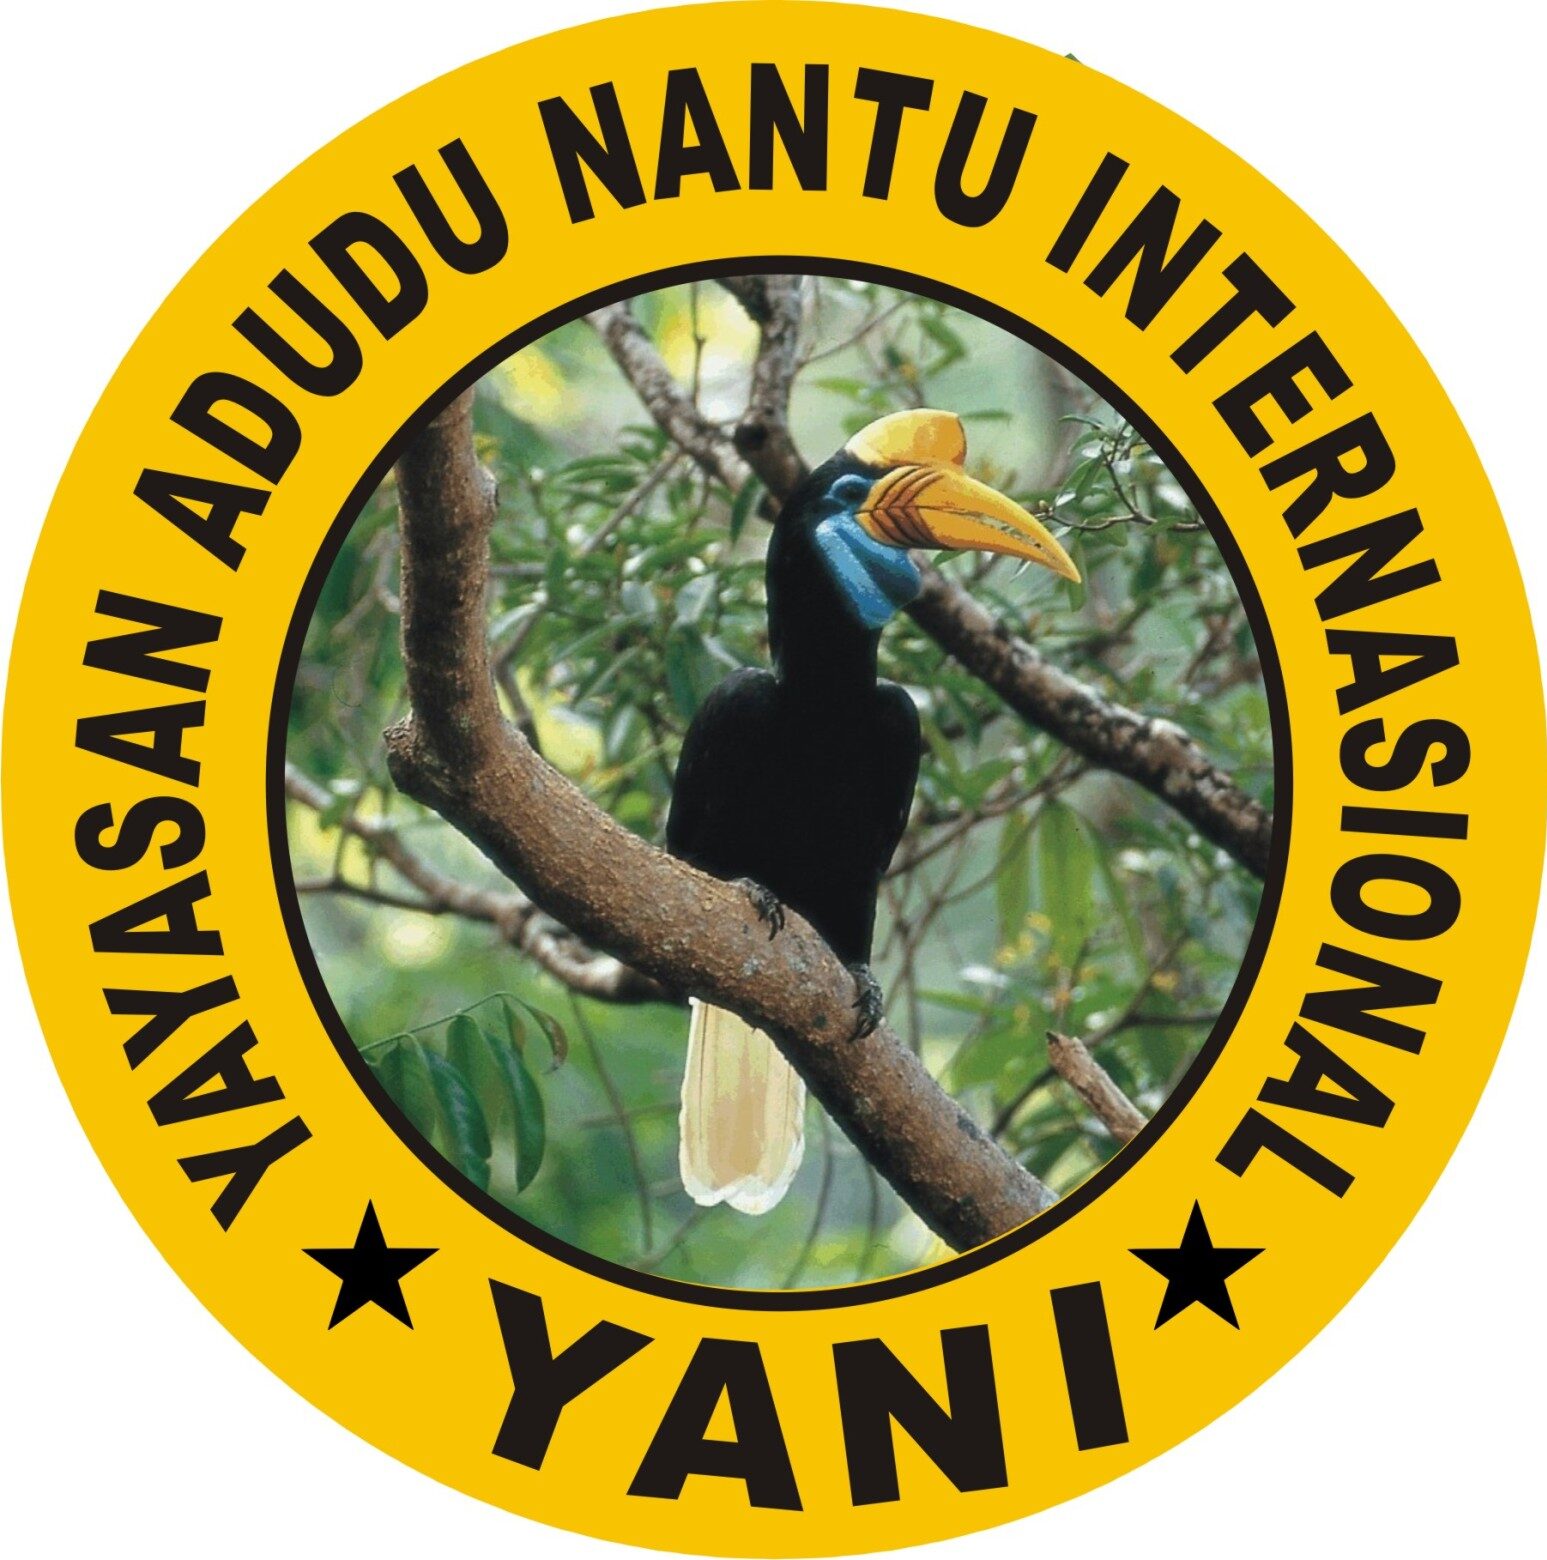 Nantu Forest